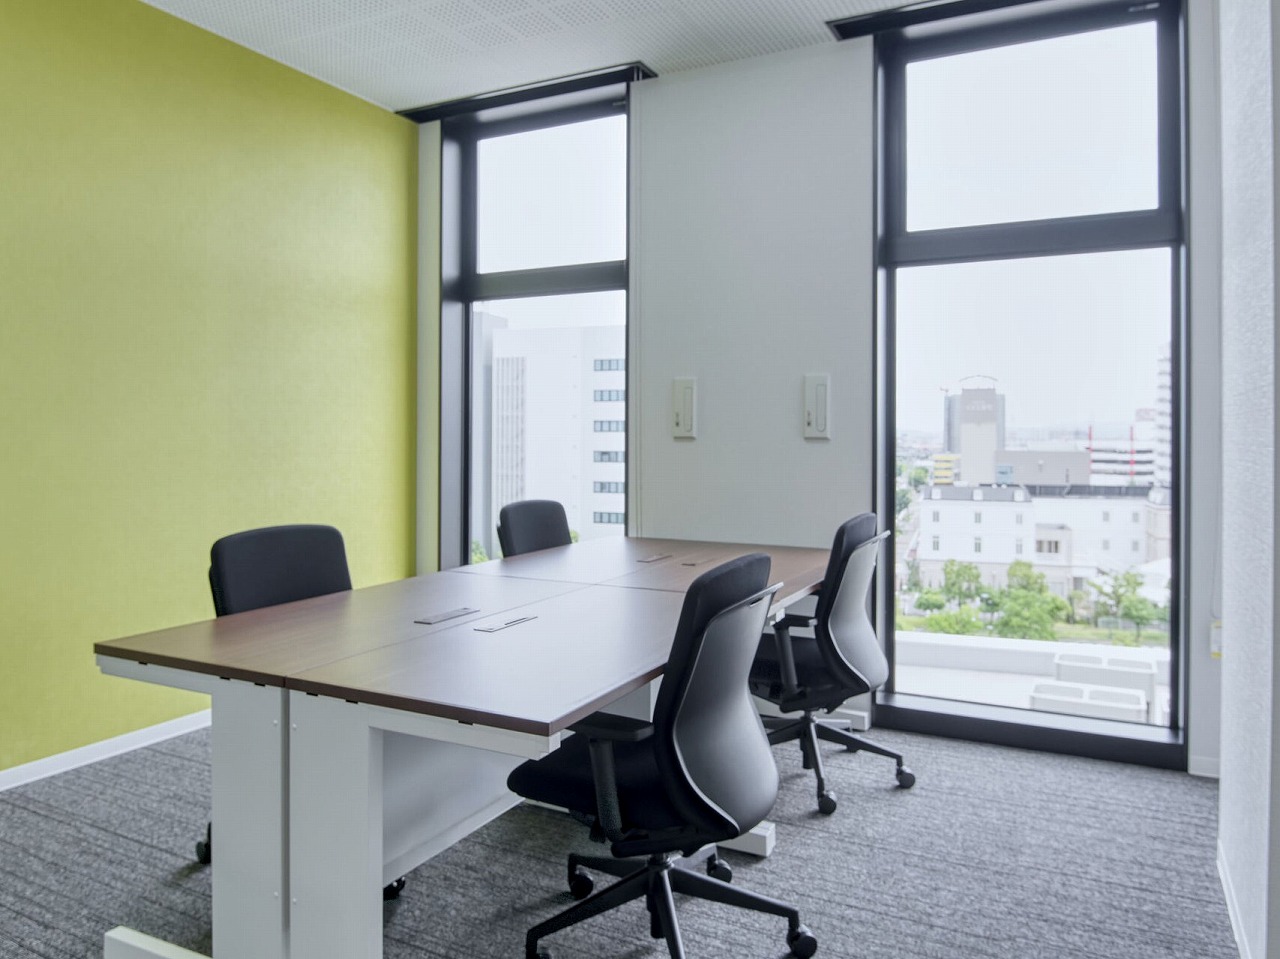 個室_24時間利用可能なプライベートオフィスを持つことができます。明るい色の壁紙がアクセントになっています。